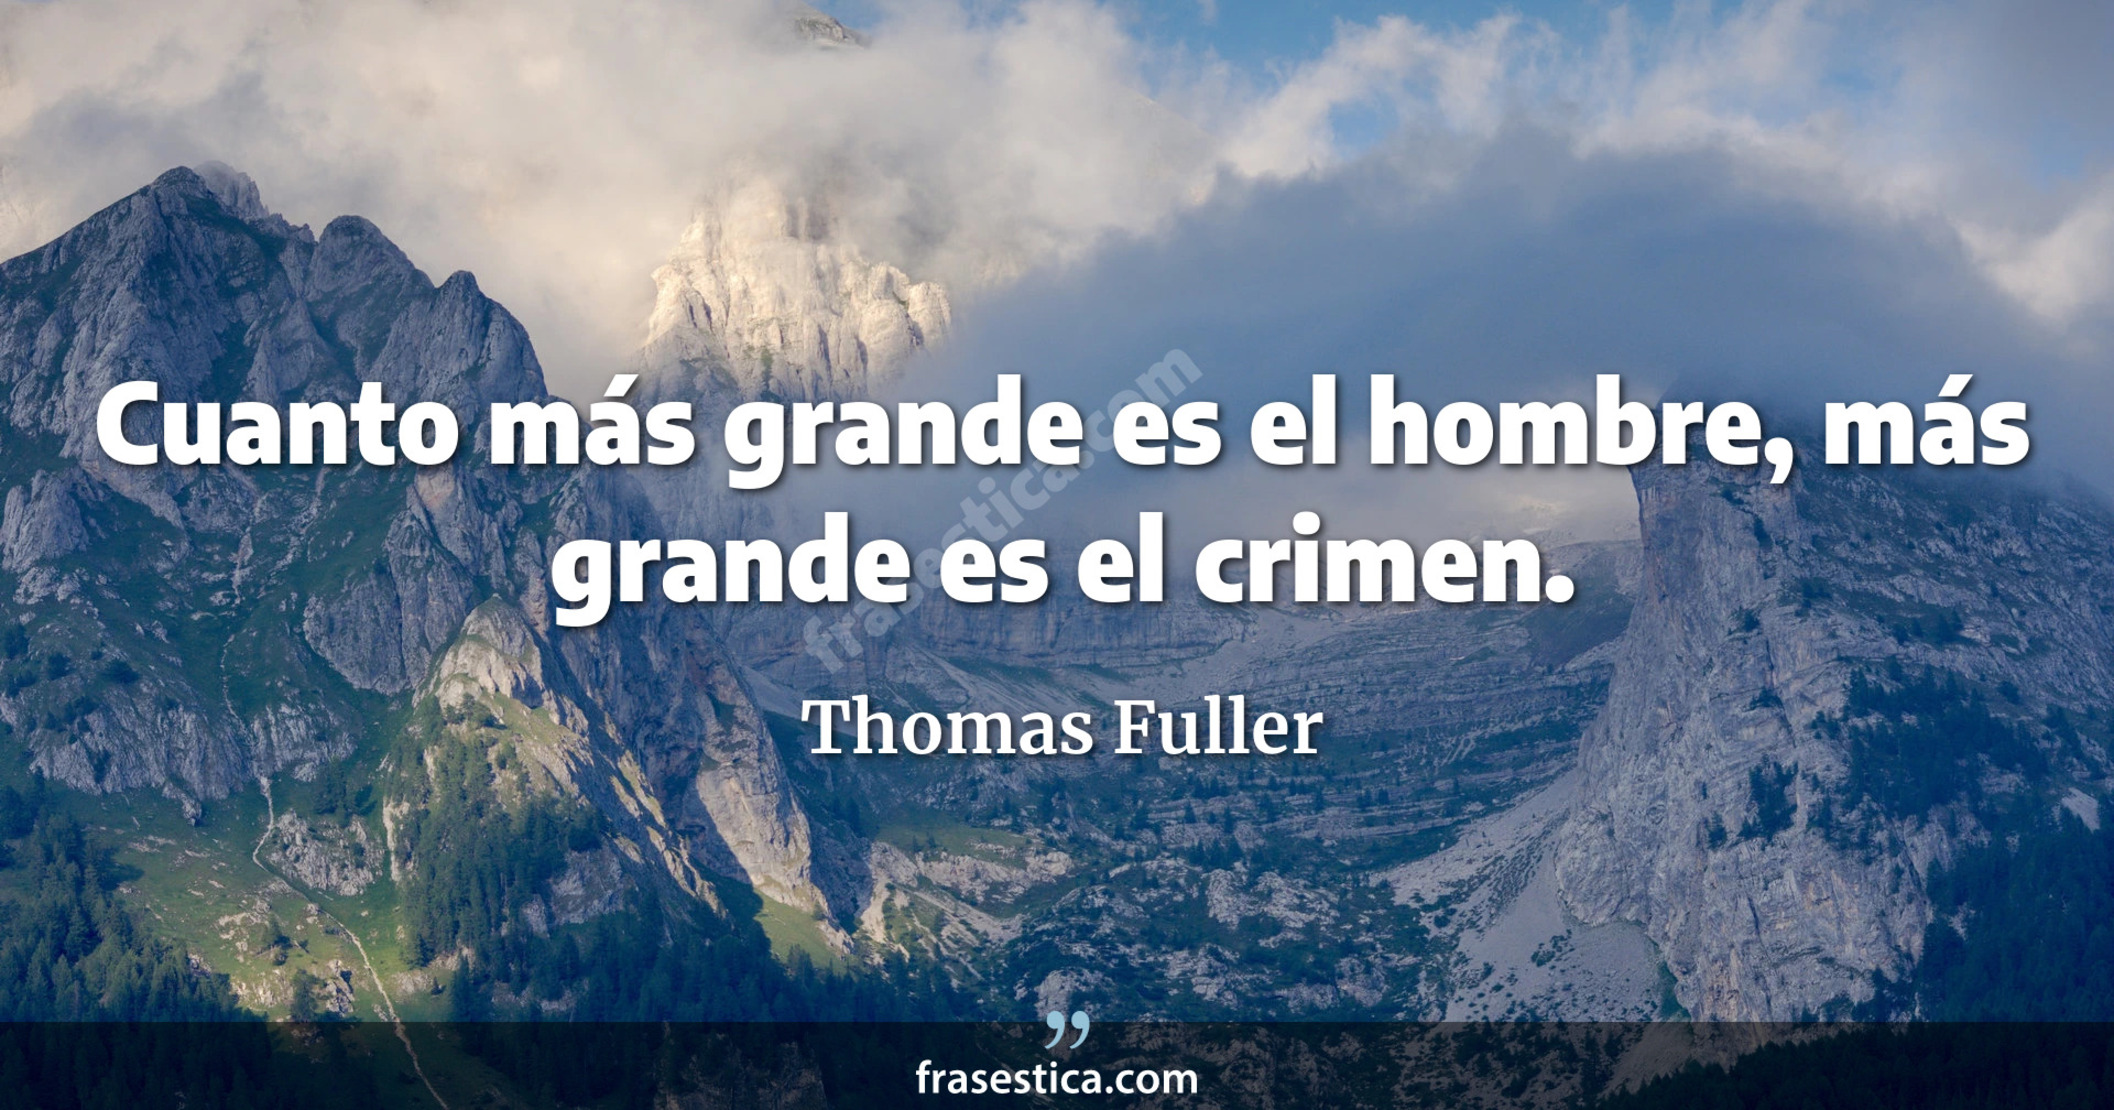 Cuanto más grande es el hombre, más grande es el crimen. - Thomas Fuller